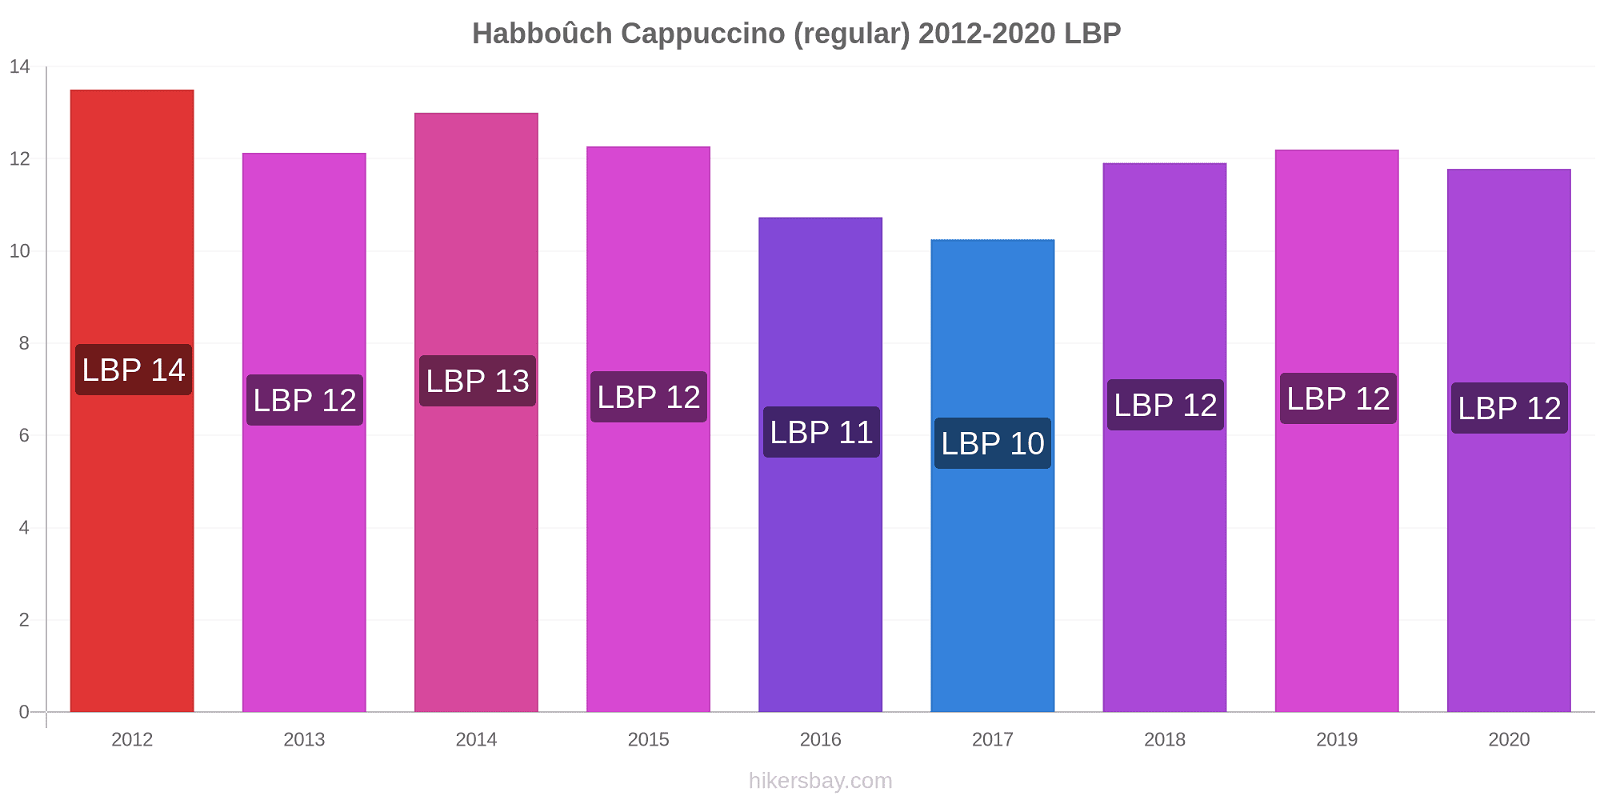 Habboûch variação de preço Capuccino (regular) hikersbay.com